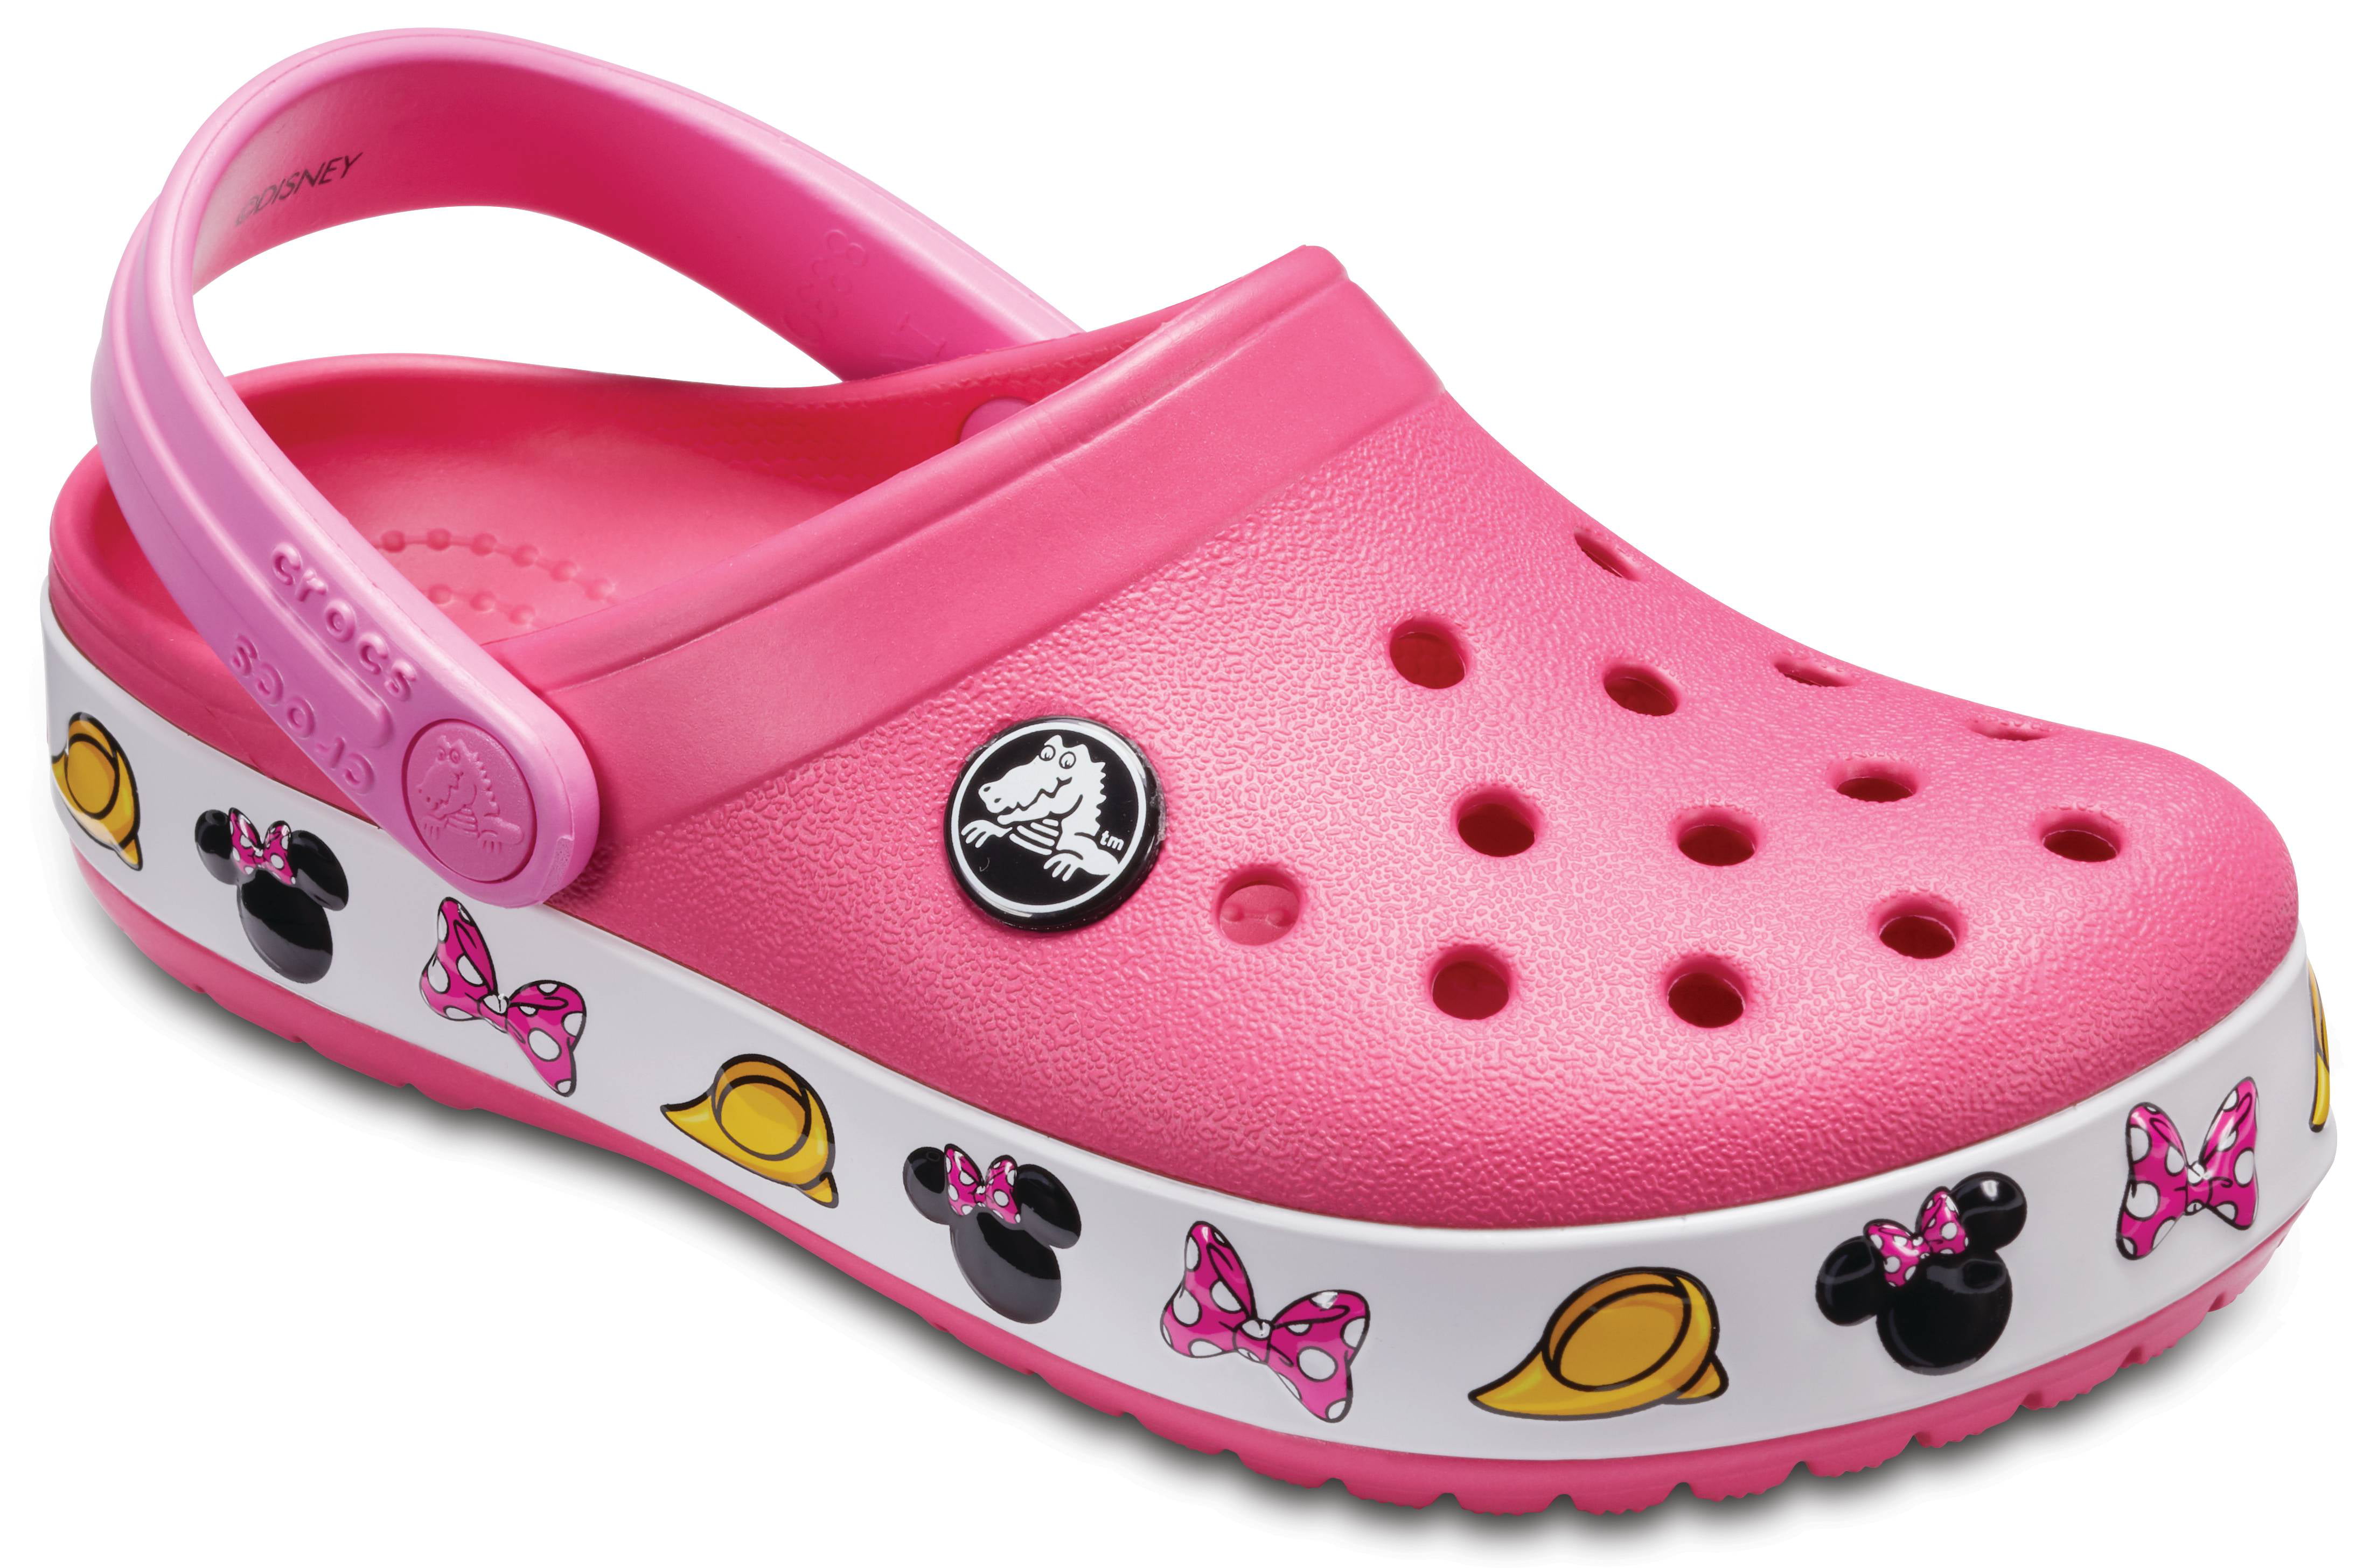 Crocs Crocband Toddler Size 9 Brand New Infant Girls Clog Slip On Shoe 